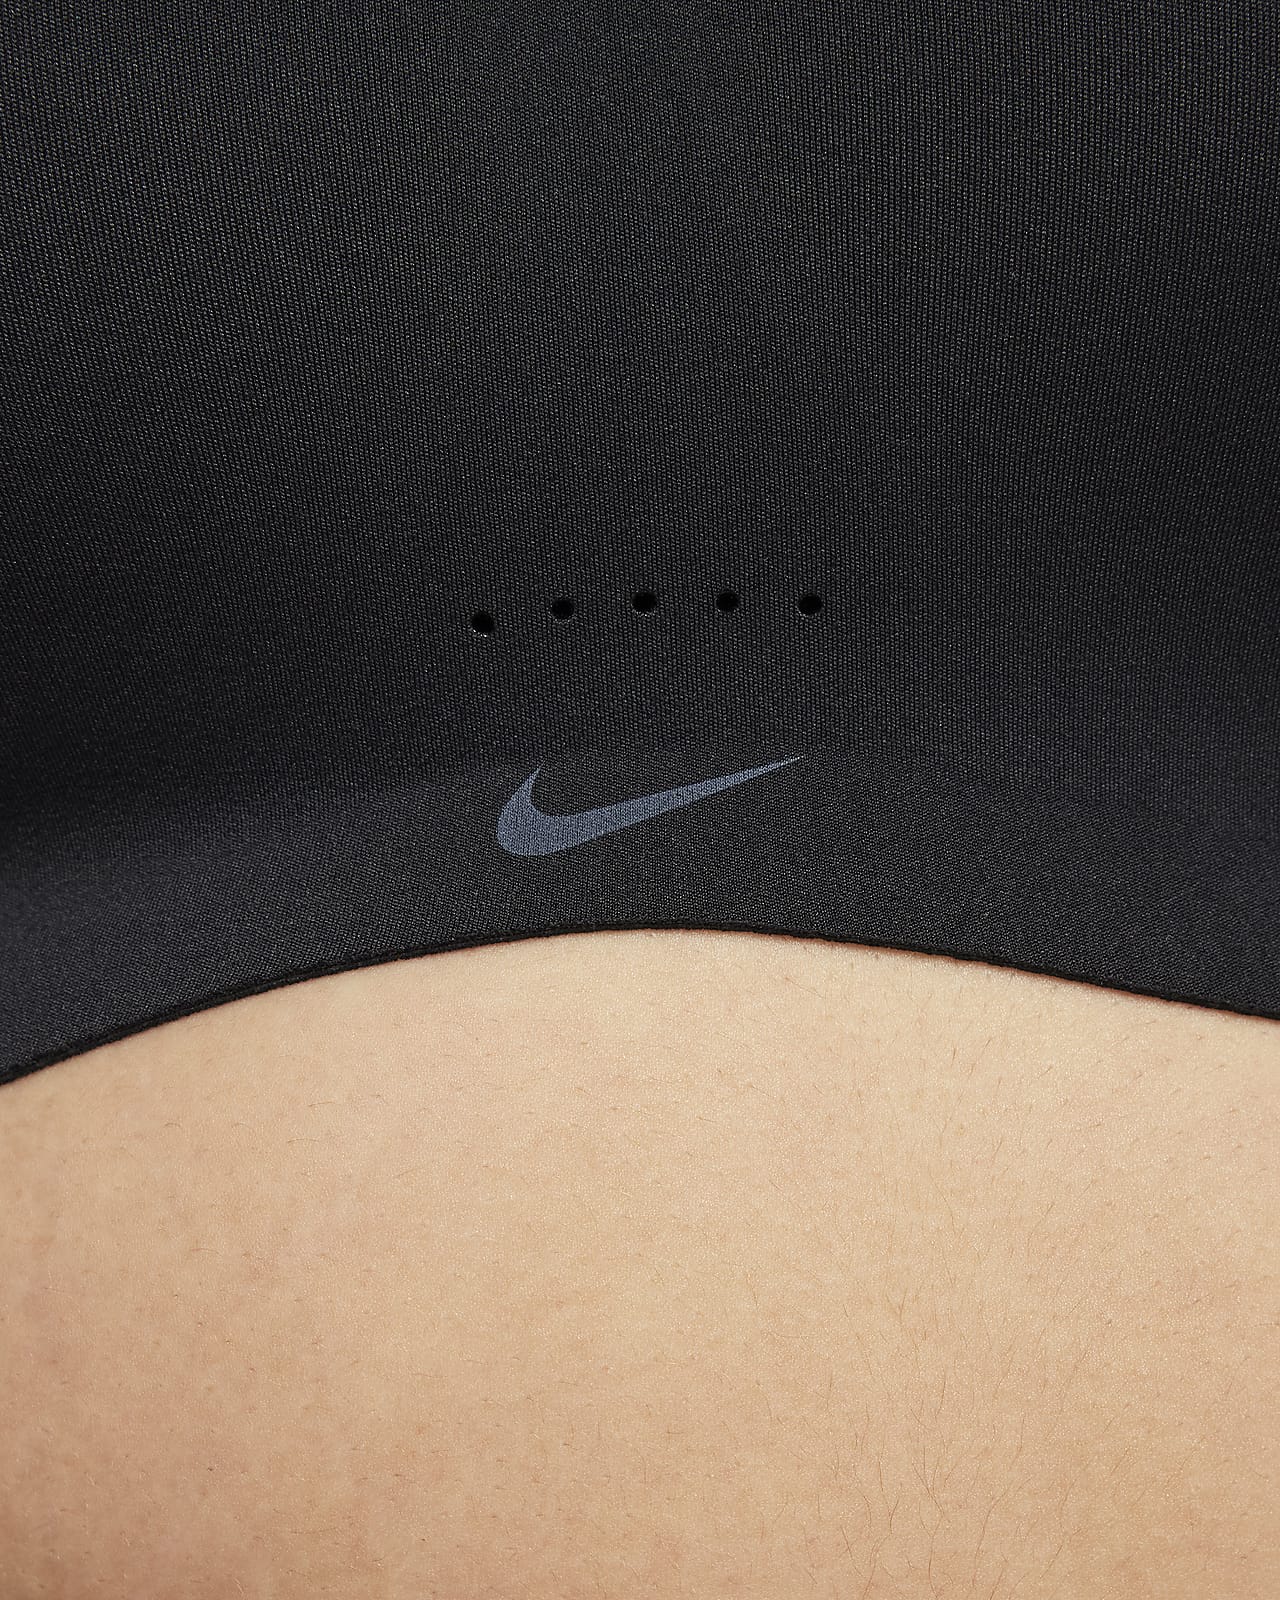 Nike Training Alate Minimalist Dri-FIT light support sports bra in